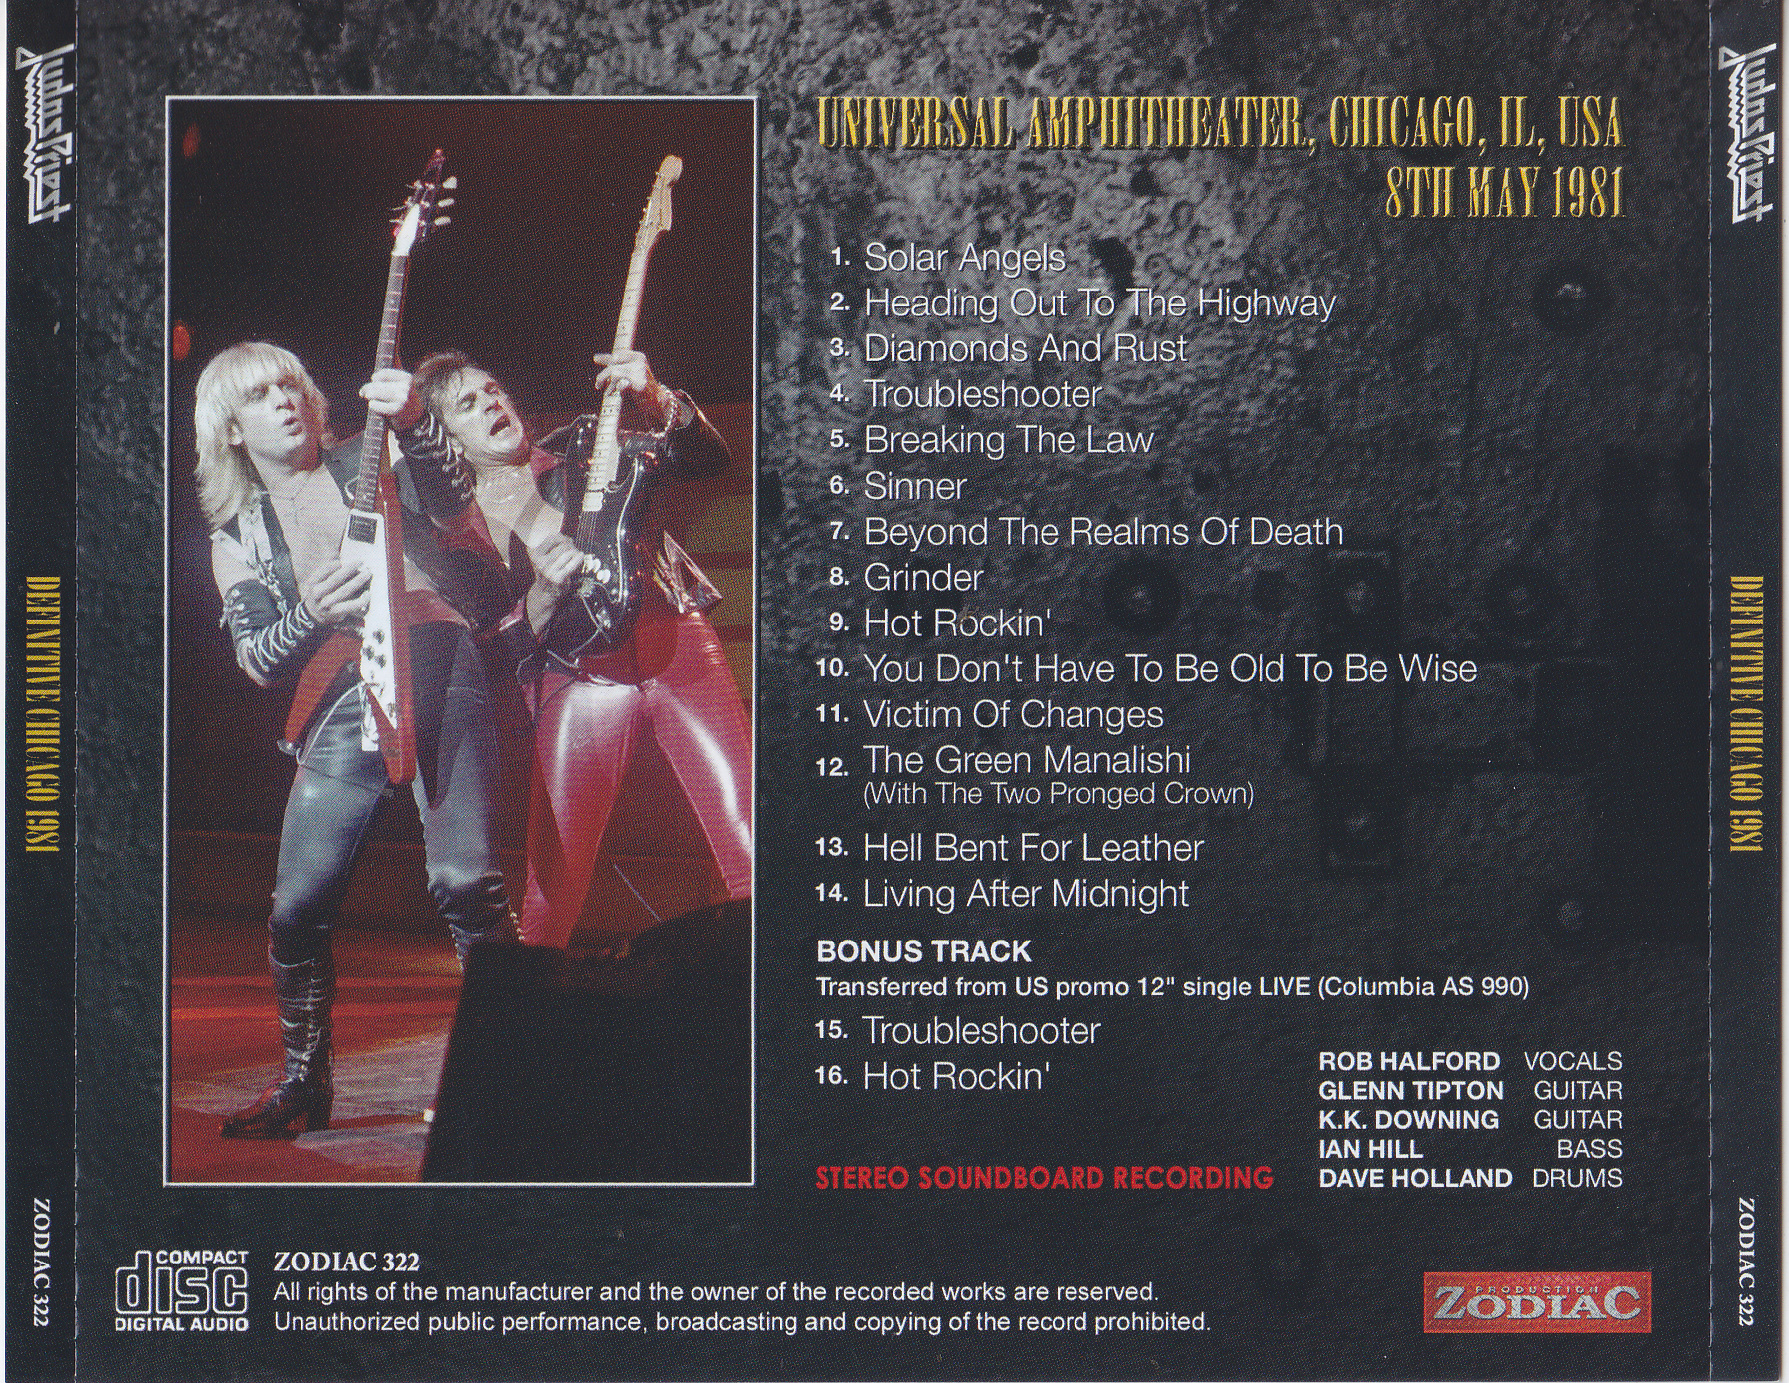 Judas Priest / Definitive Chicago 1981 / 1CD – GiGinJapan